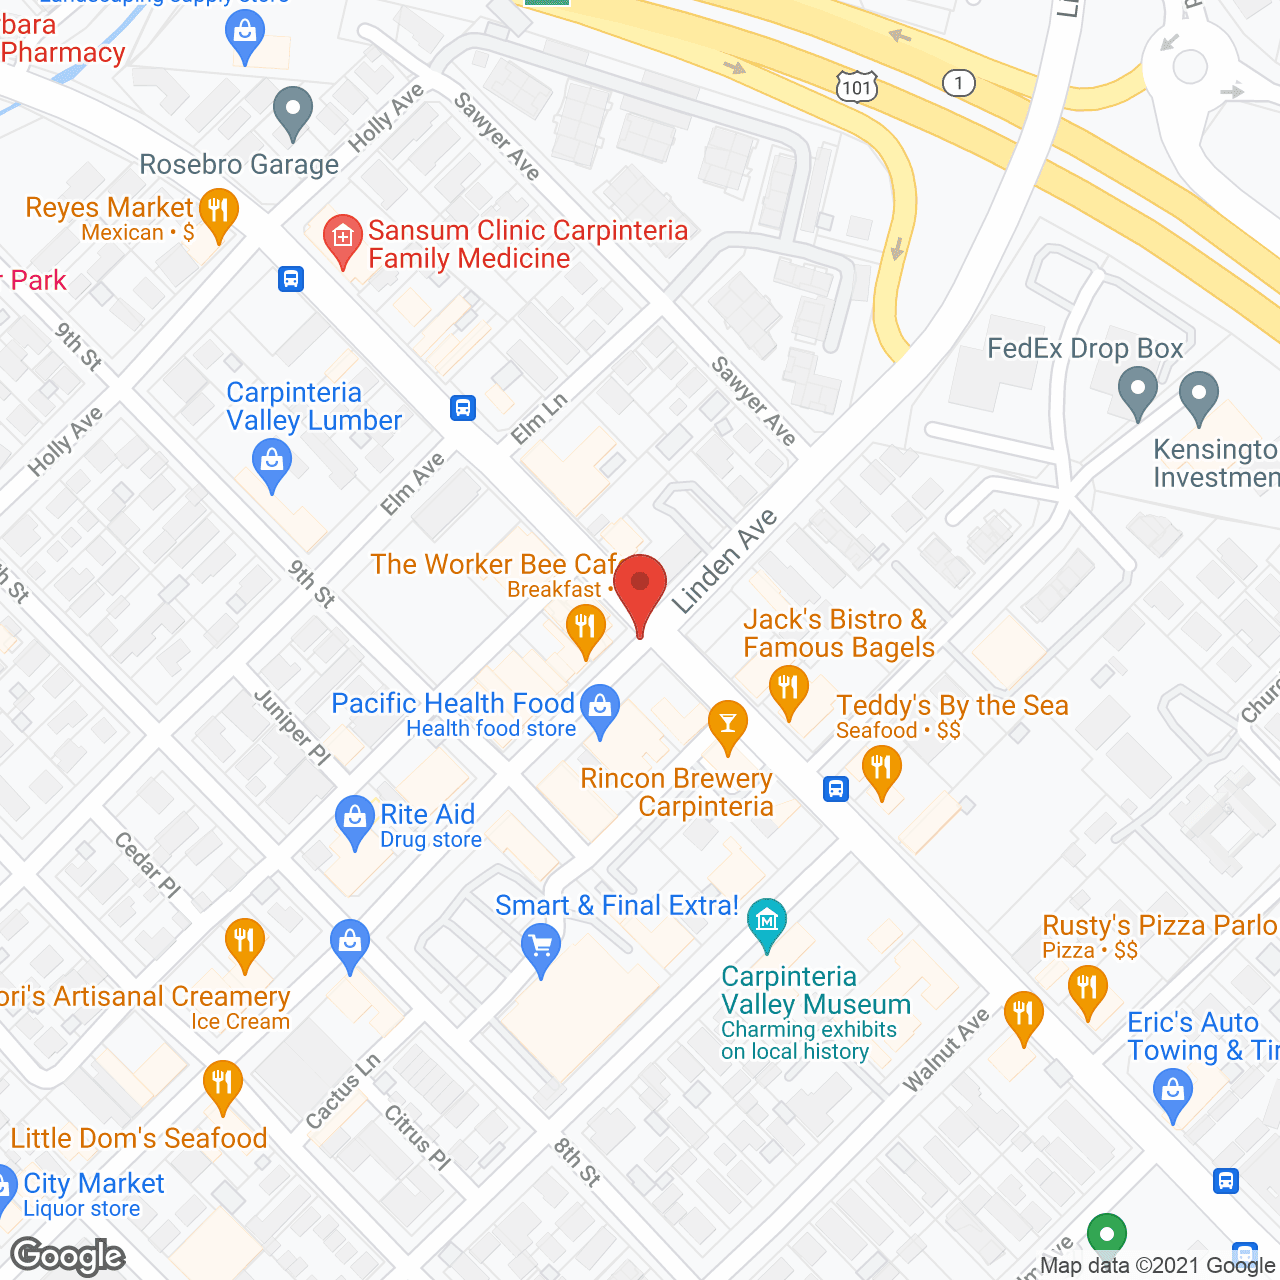 GranVida in google map